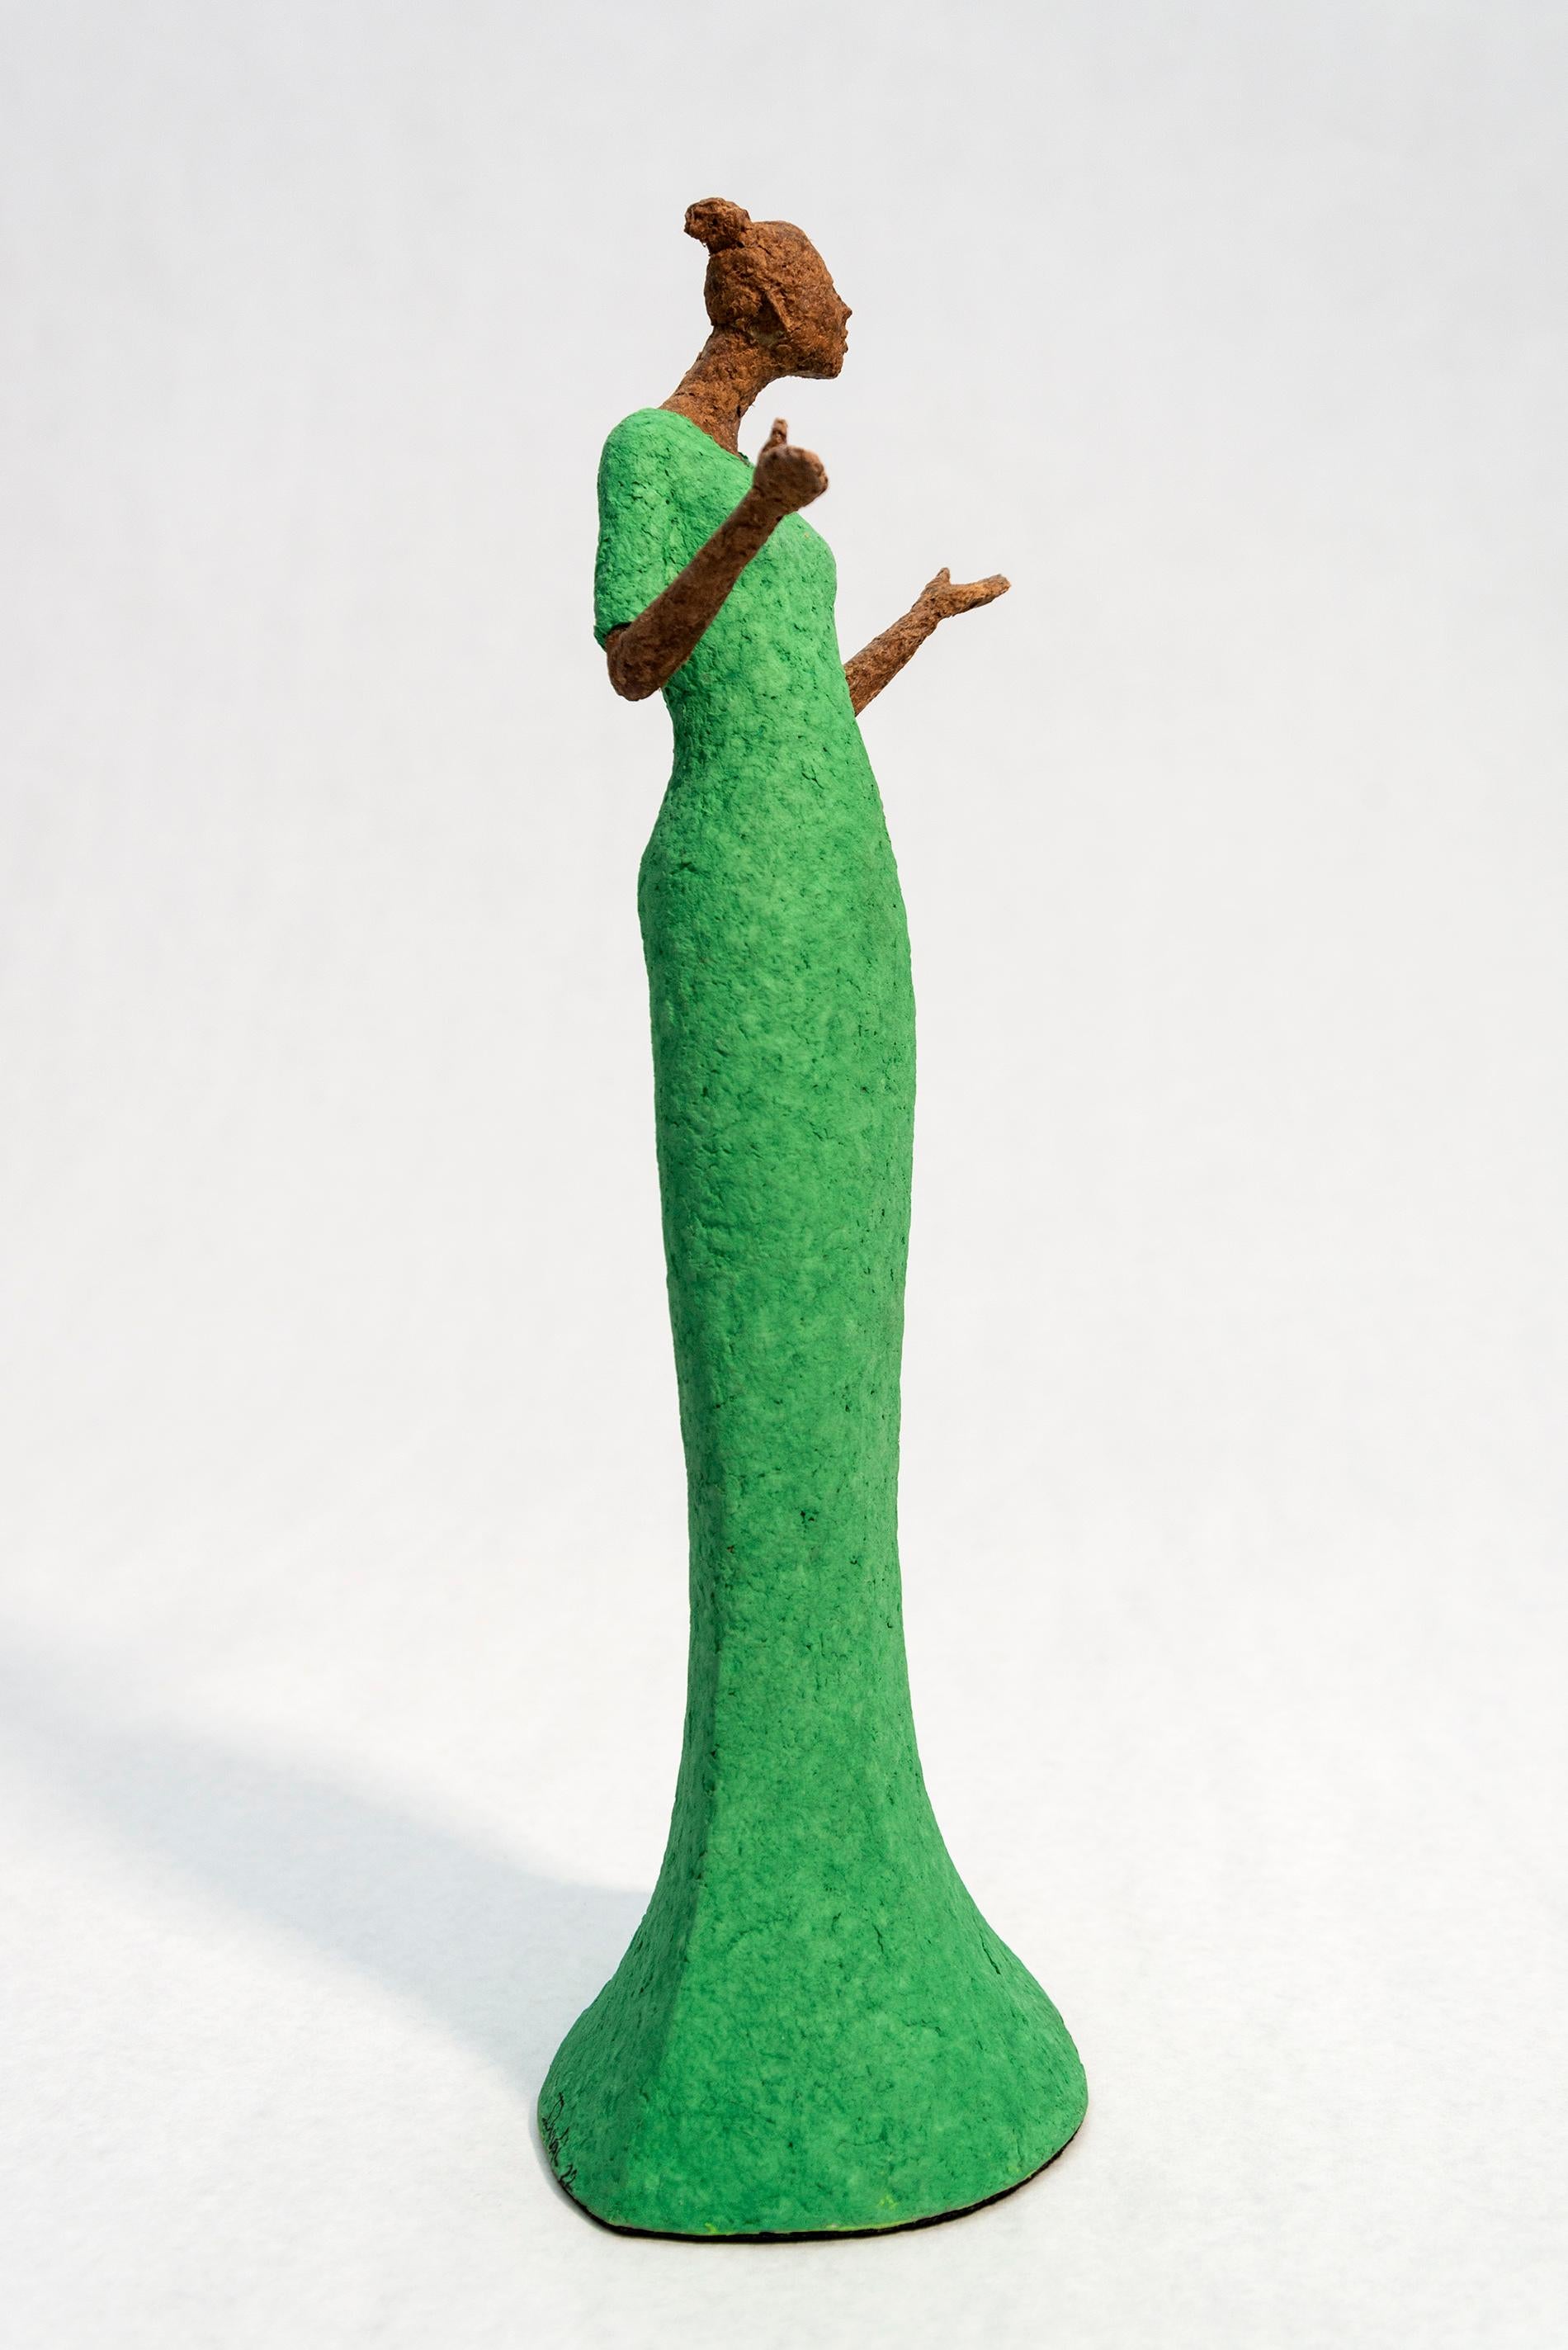 Le sculpteur québécois Paul Duval a créé une série de sculptures de table délicieusement attachantes qui représentent une variété de personnages. Bella est une femme de couleur bronze, vêtue d'une robe vert vif, les cheveux attachés en chignon. Ses